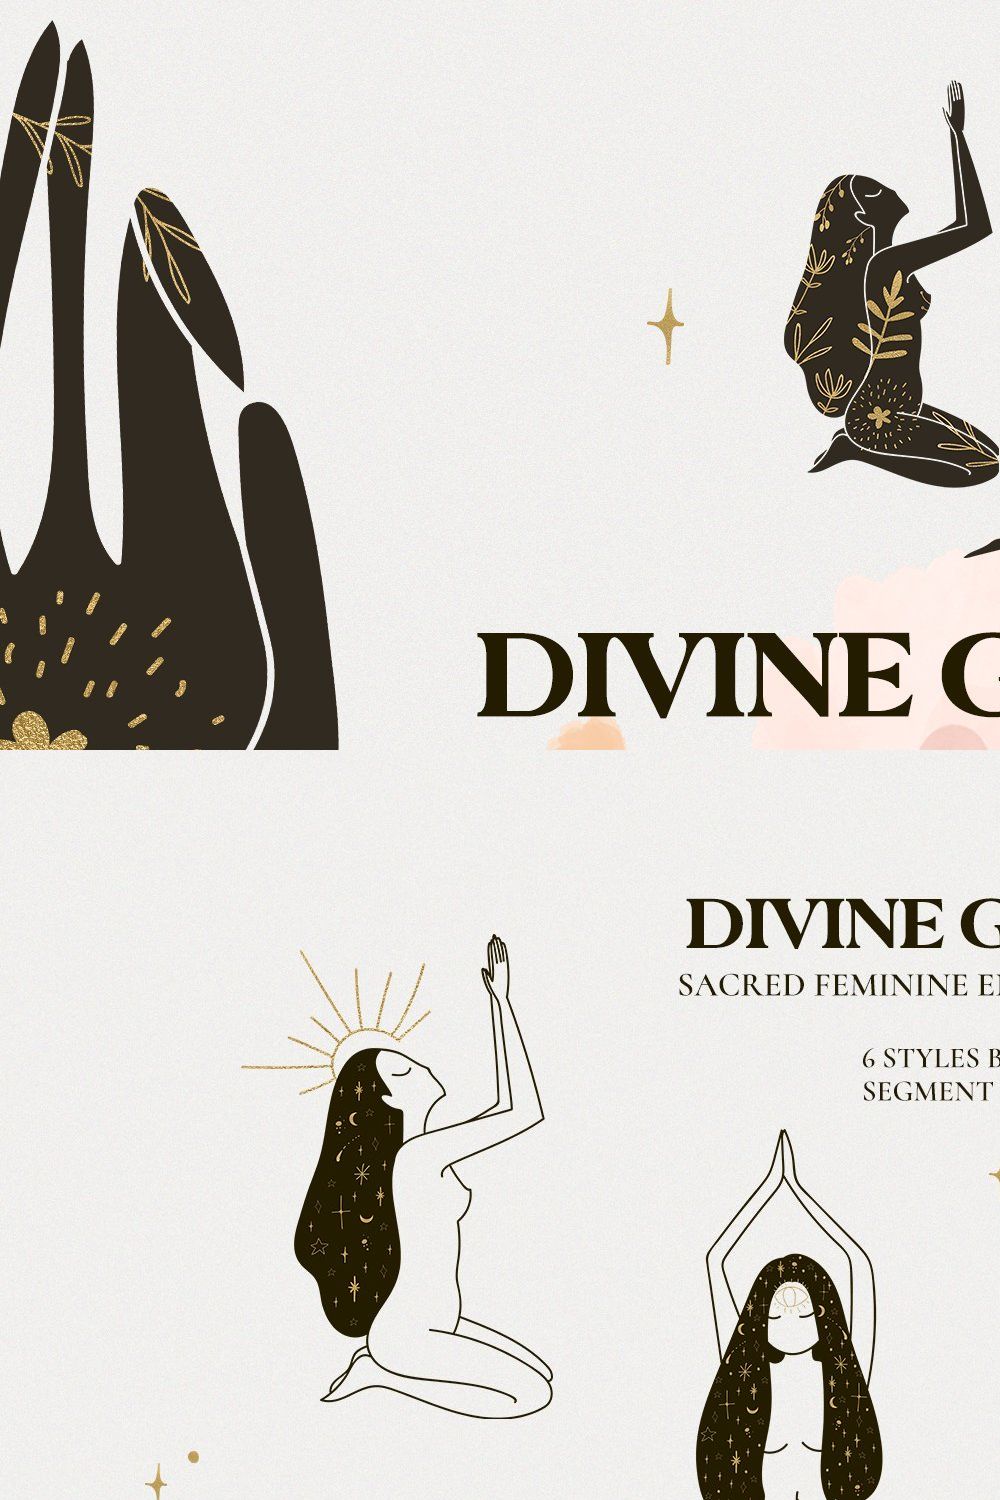 DIVINE GODDESS feminine magic women pinterest preview image.